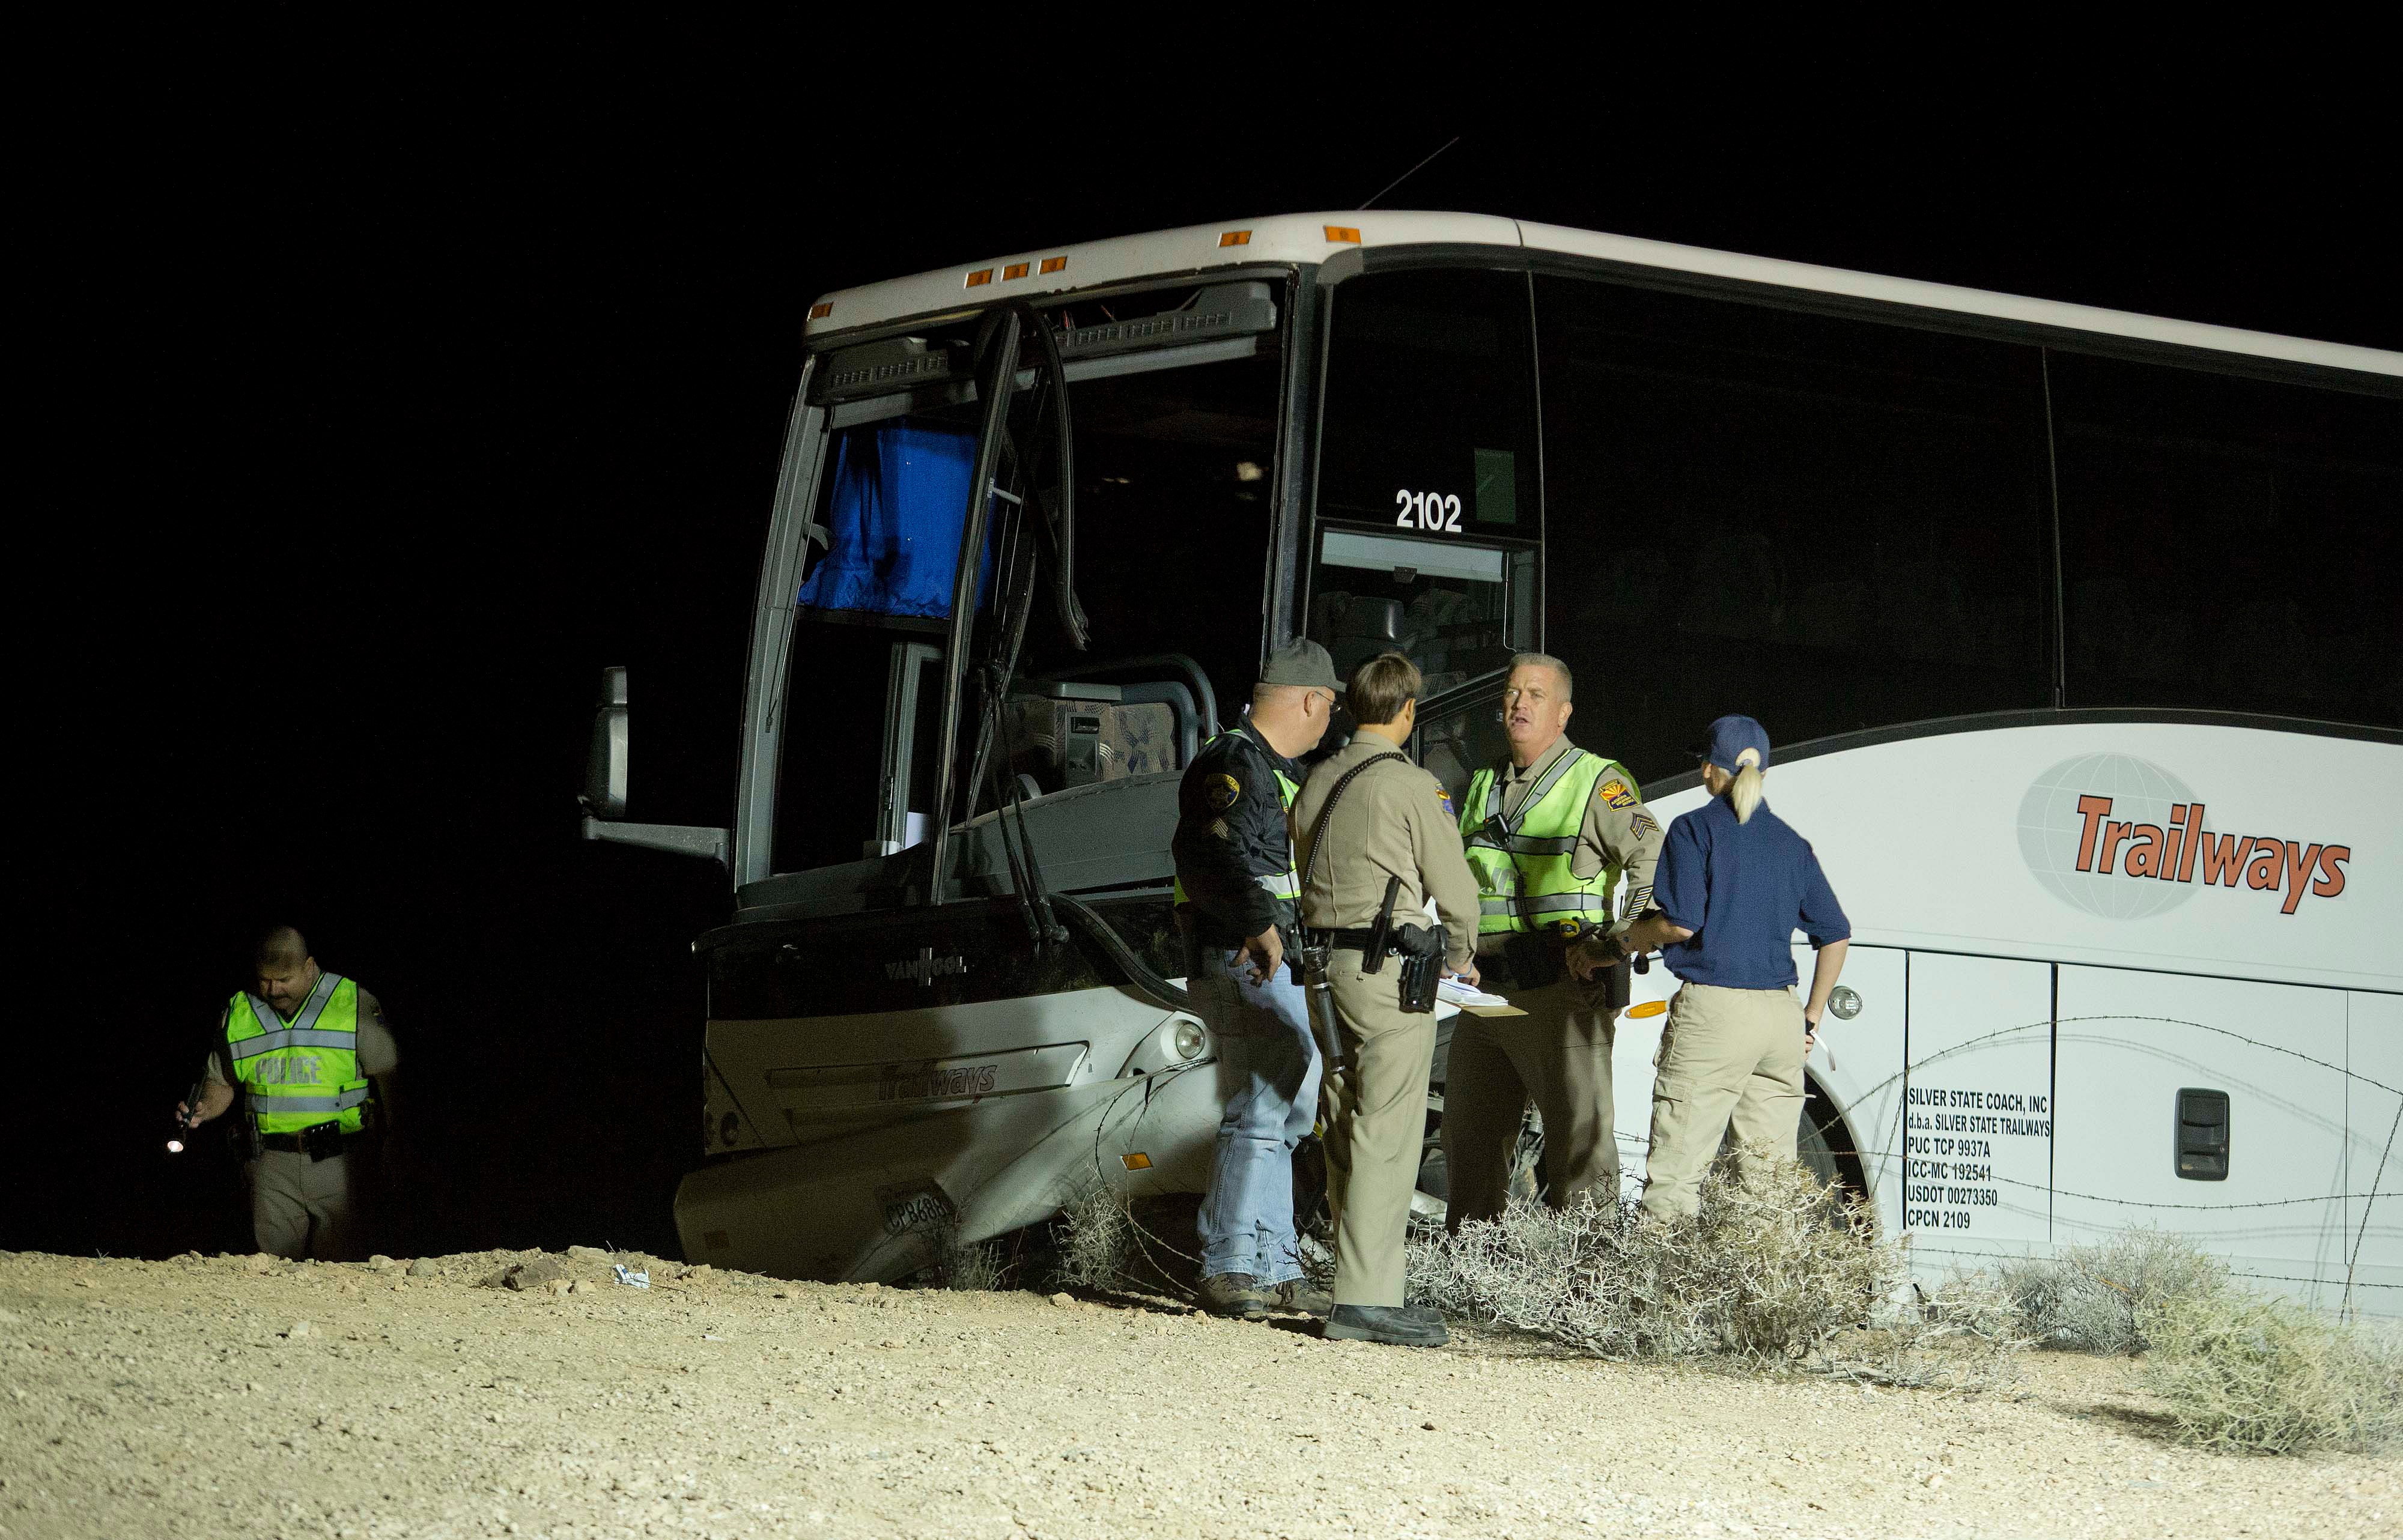 tour bus accident in arizona